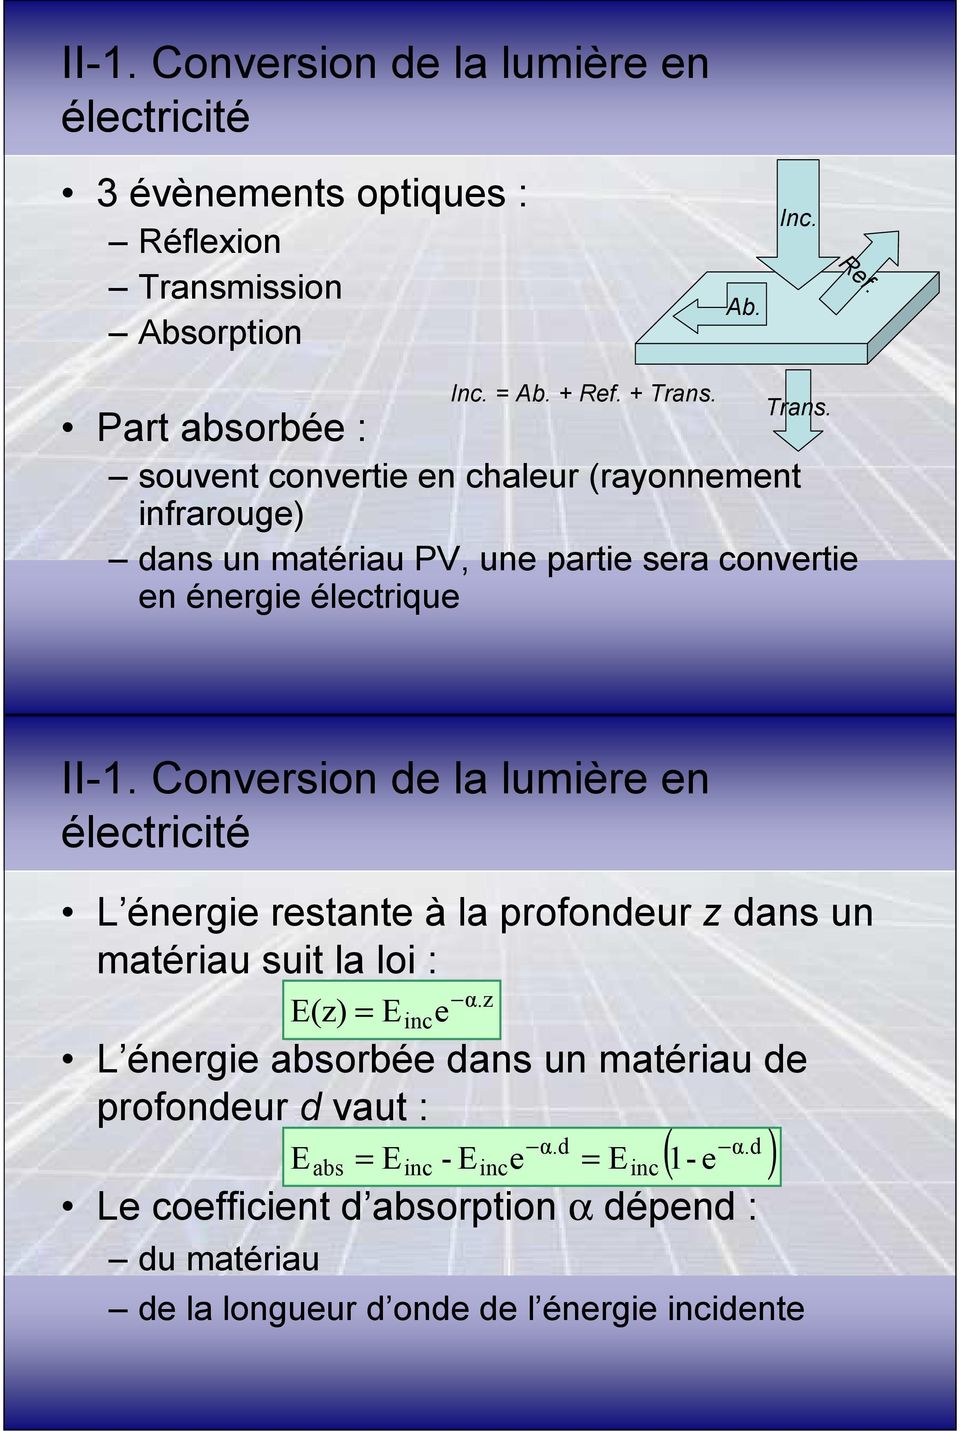 Trans. Part absorbée : souvent convertie en chaleur (rayonnement infrarouge) dans un matériau PV, une partie sera convertie en énergie électrique 31 II-1.